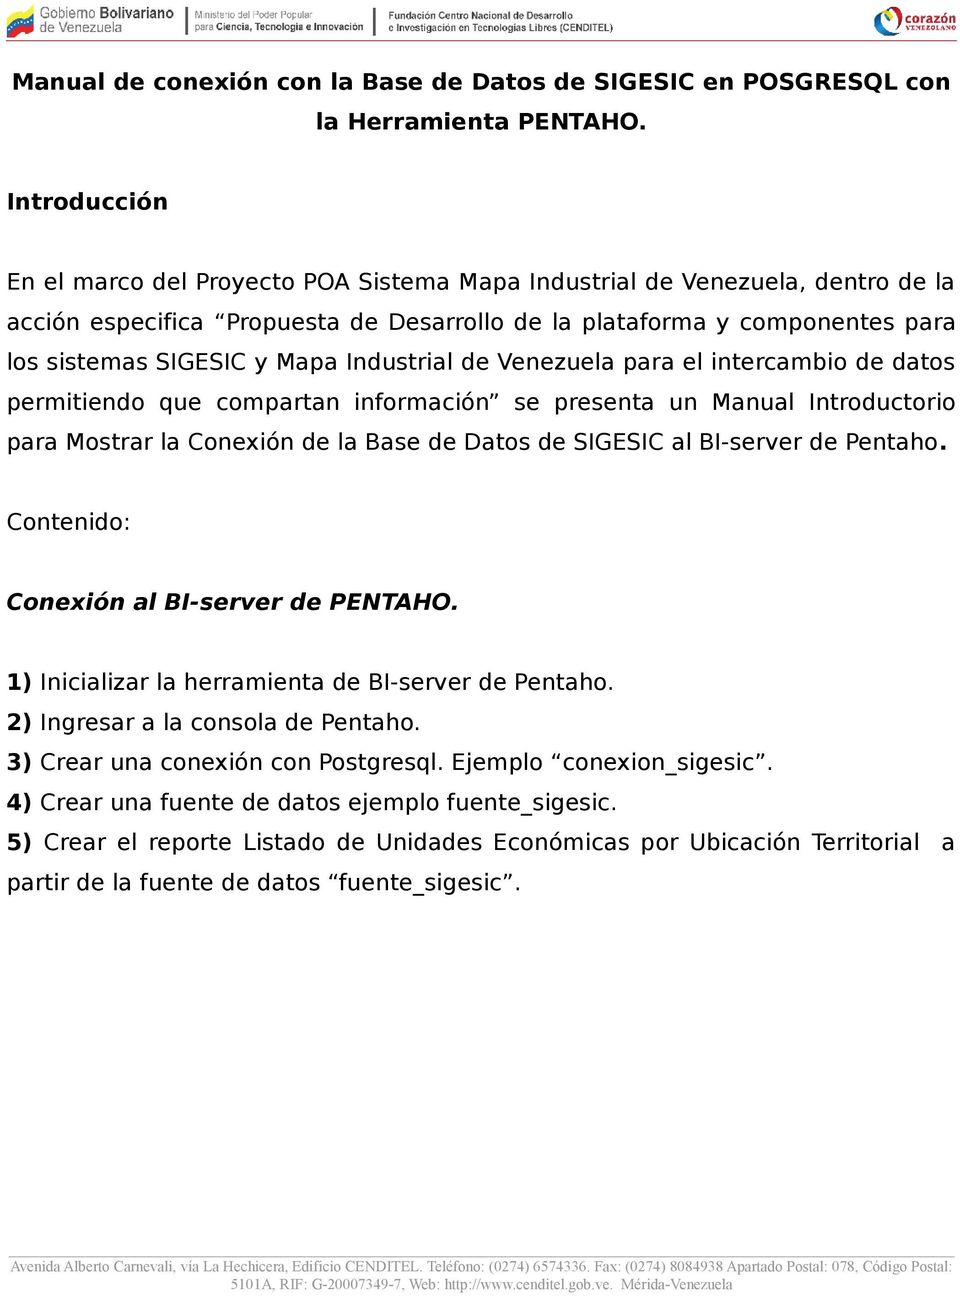 Industrial de Venezuela para el intercambio de datos permitiendo que compartan información se presenta un Manual Introductorio para Mostrar la Conexión de la Base de Datos de SIGESIC al BI-server de